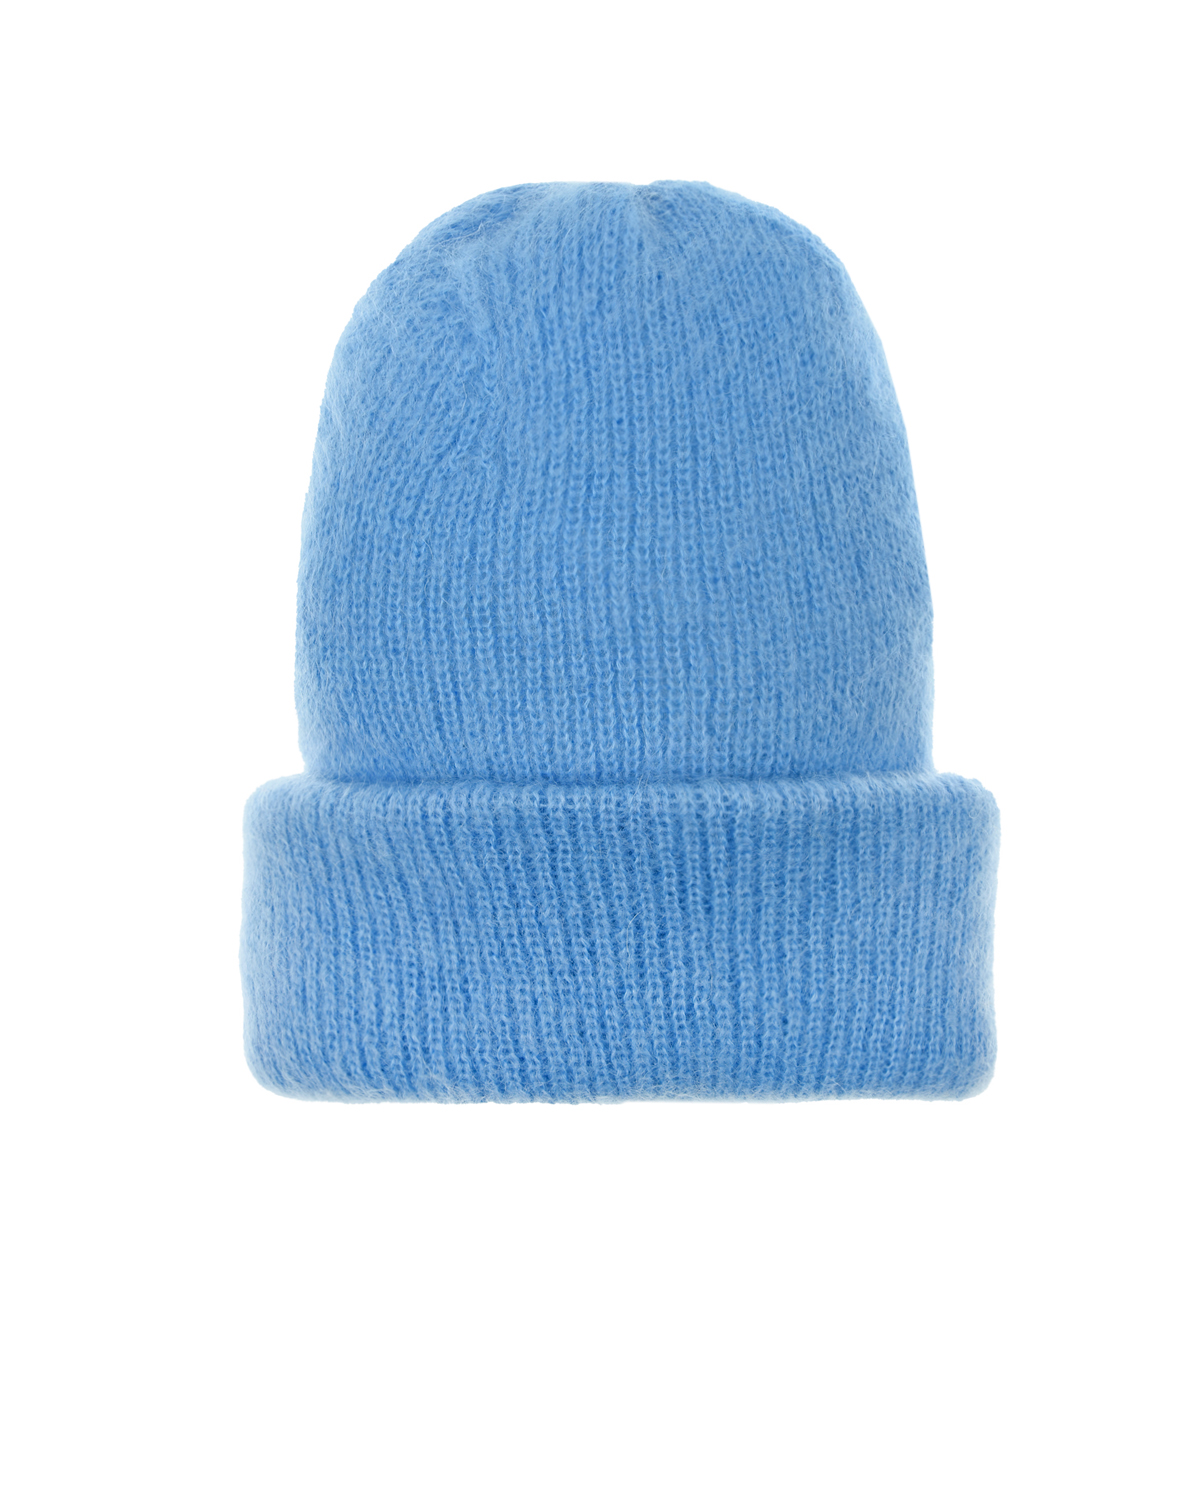 Голубая шапка с отворотом Tak Ori, размер unica, цвет голубой